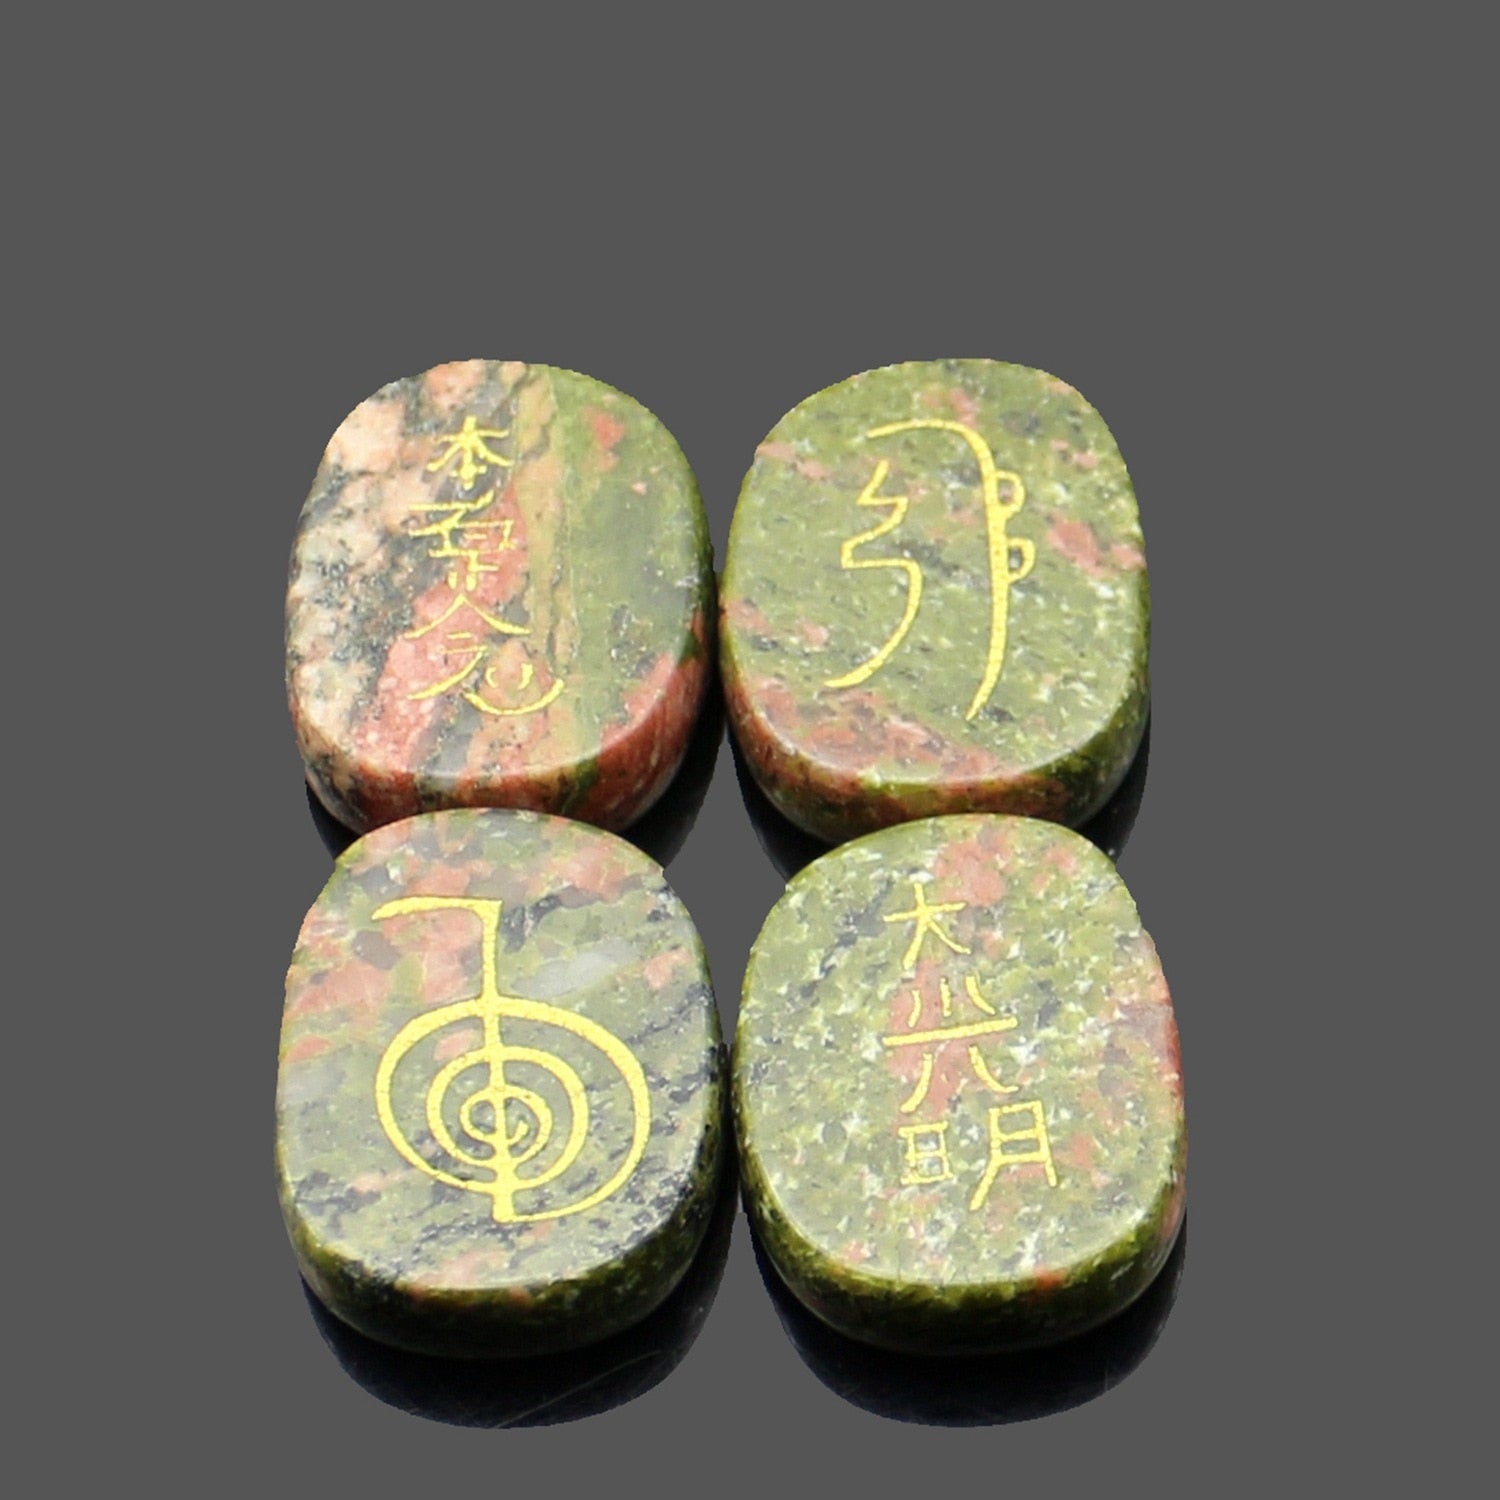 four reiki symbol engraved stones chokurei seihiki honshazeshonen daikomyo  (power, emotion, distance, higher level or master) flower green stone